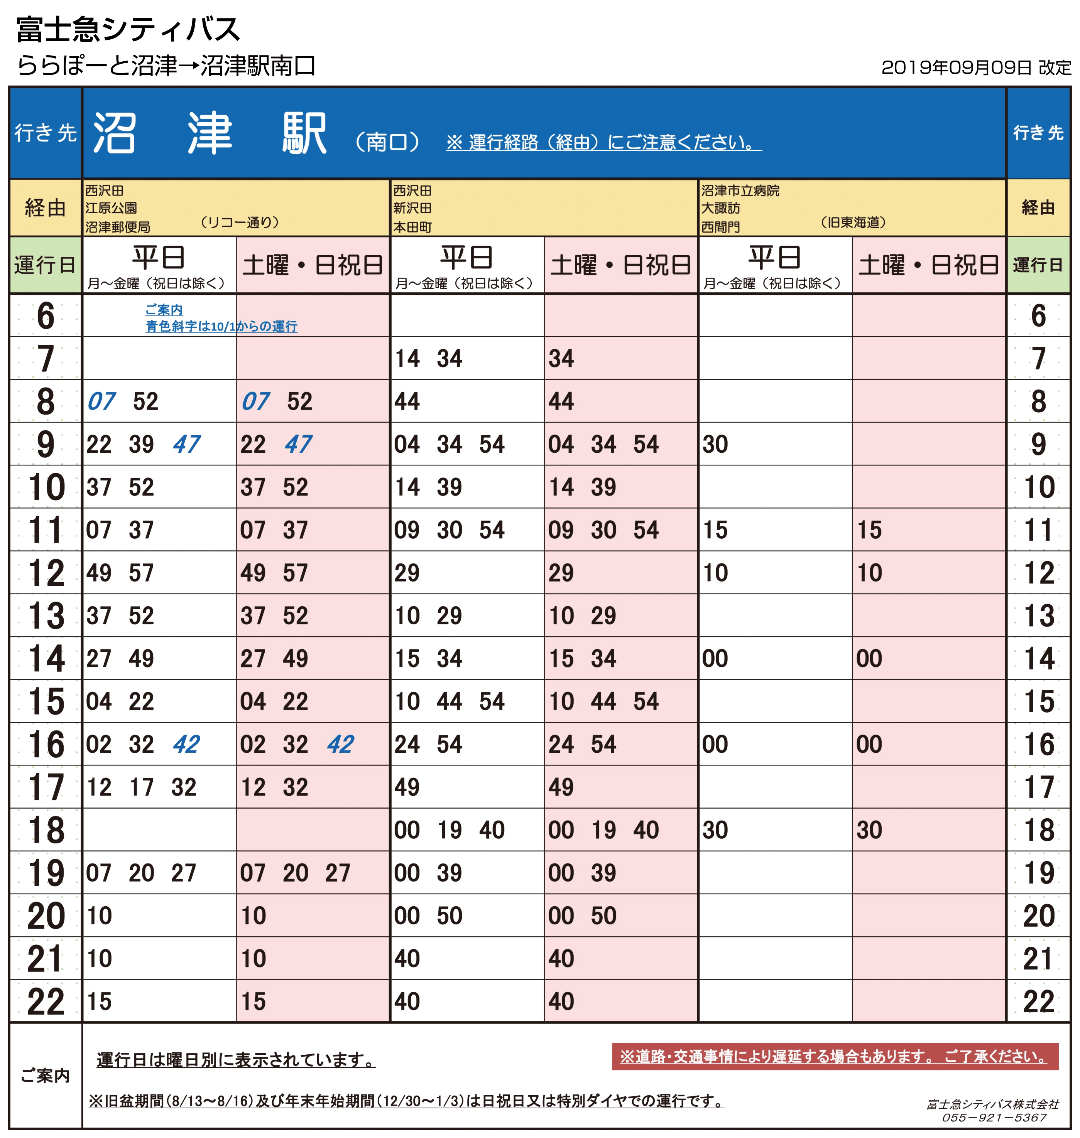 沼津駅(南口)行き バス時刻表